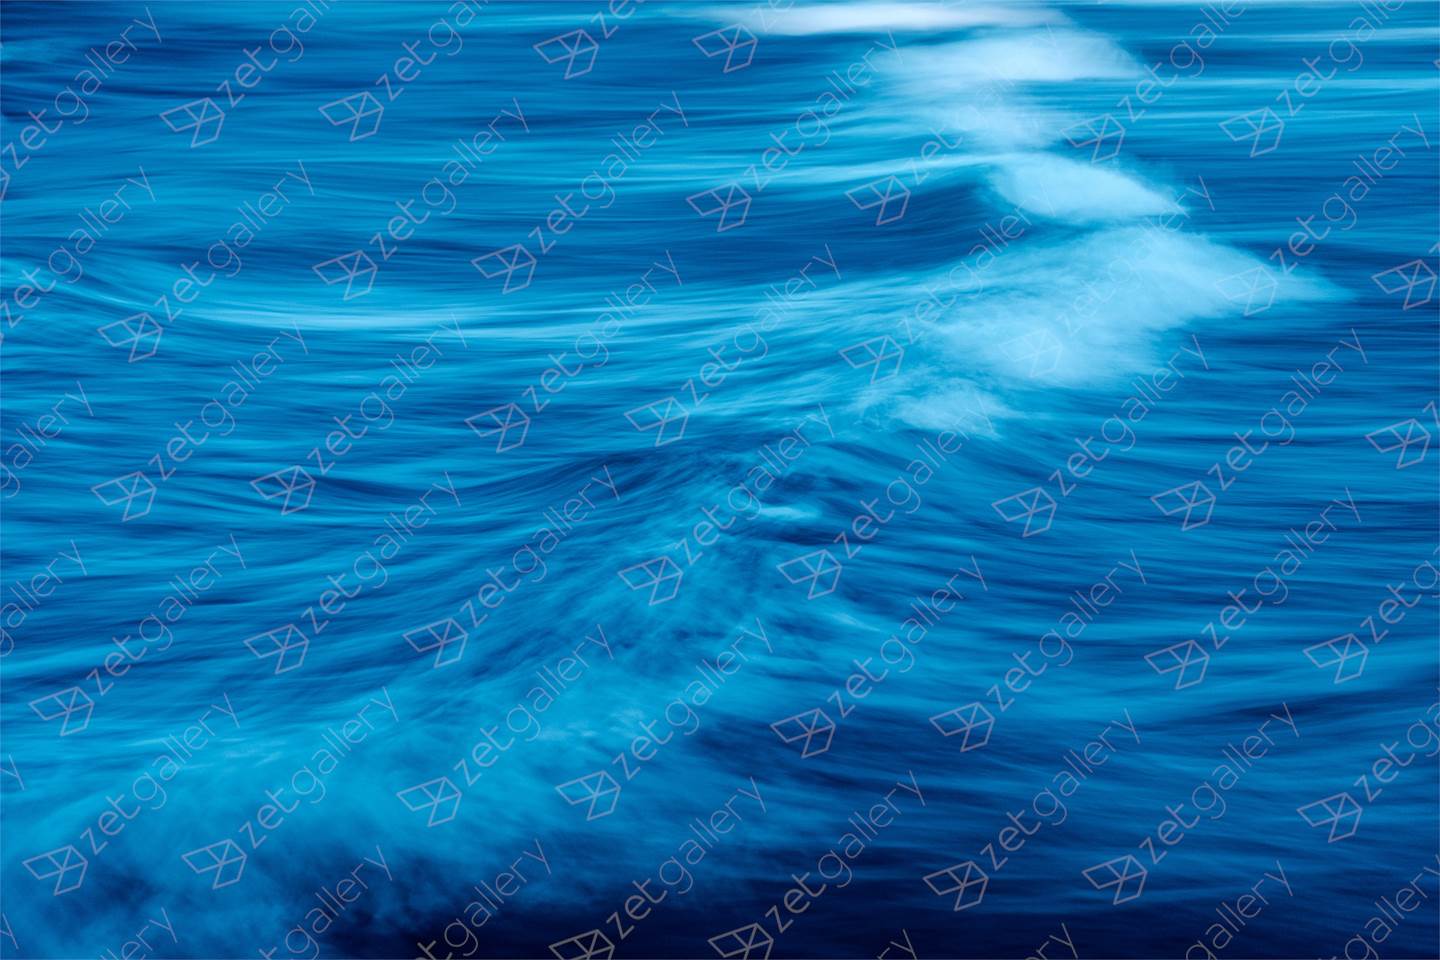 BLUE WAVE, Large Edition 1 of 5, original Resumen Digital Fotografía de Benjamin Lurie